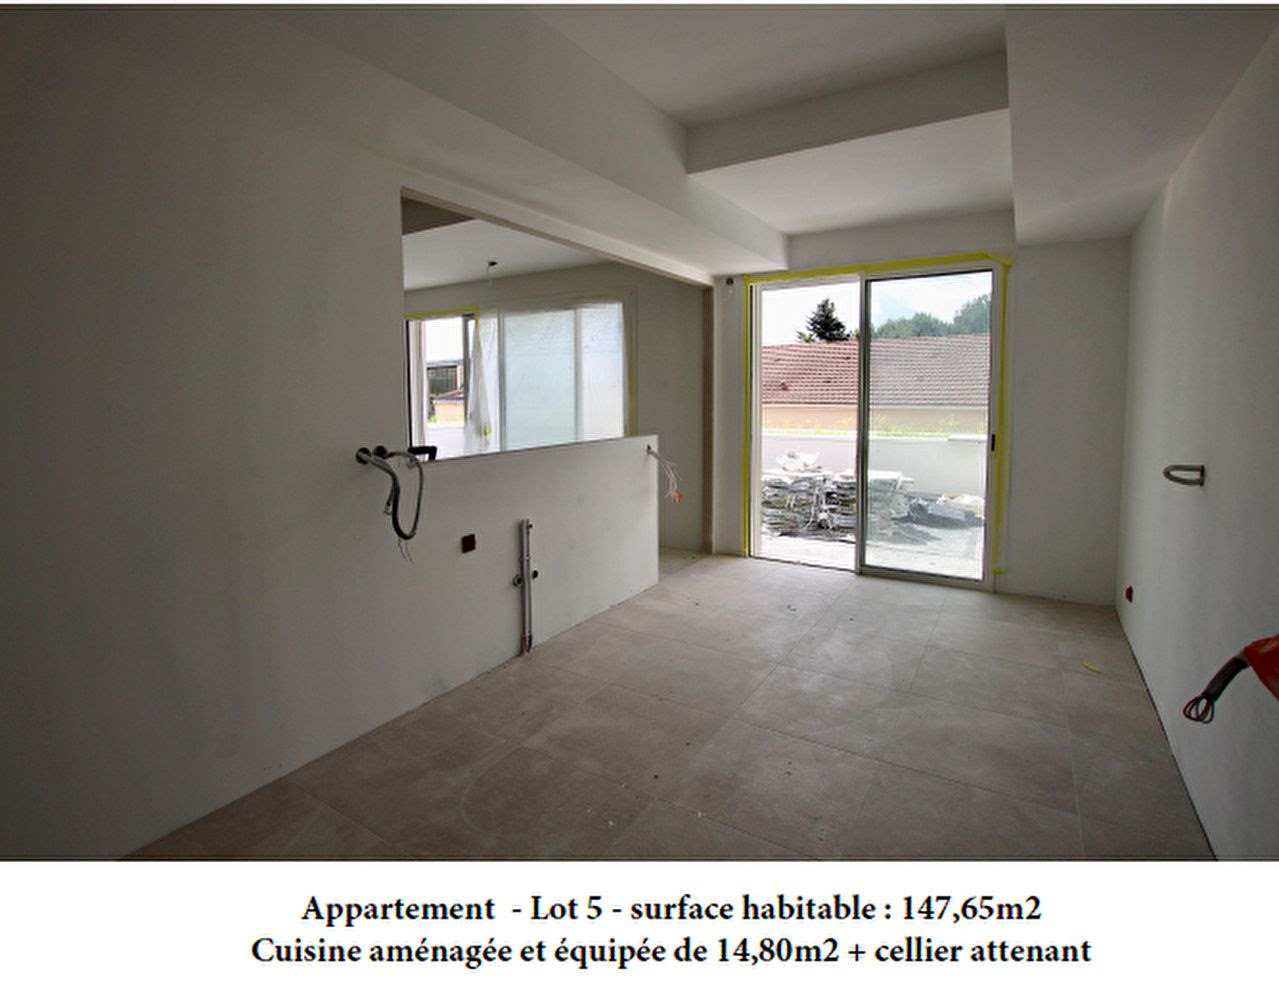 Vente appartement 4 pièces 147,65 m2